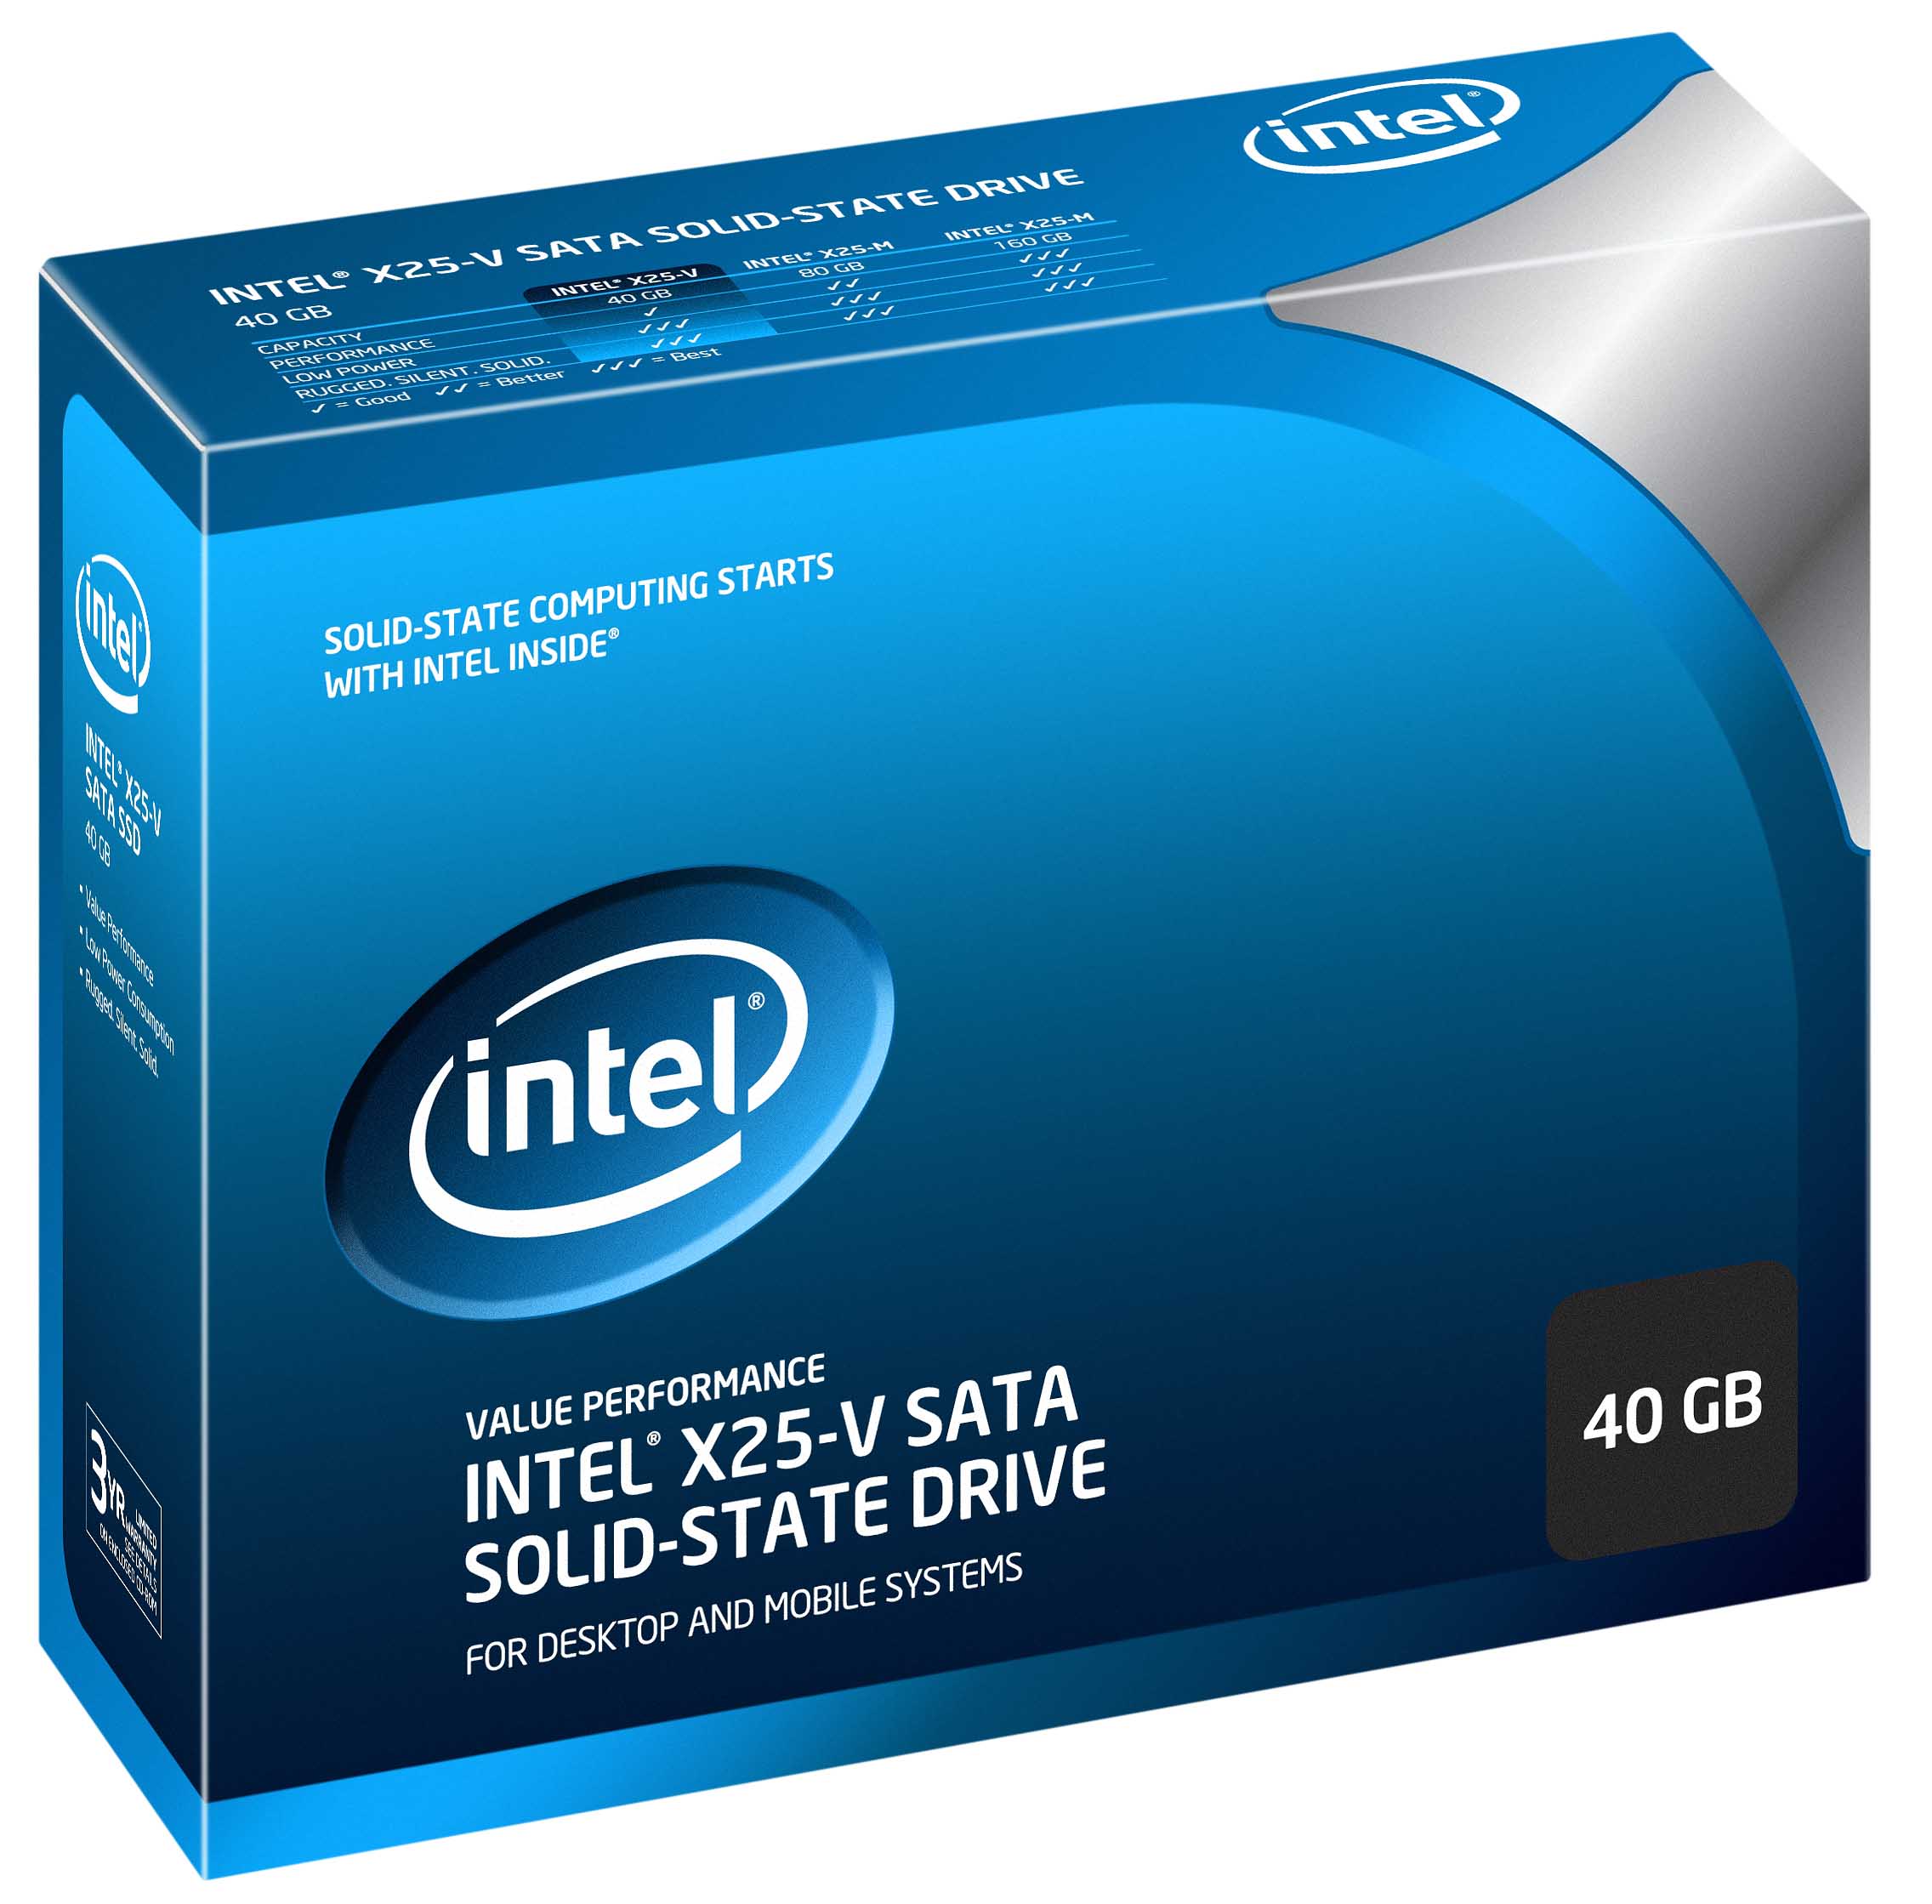 Immagine pubblicata in relazione al seguente contenuto: Intel propone l'SSD low cost X25-V per i netbook e i PC dual-boot | Nome immagine: news12723_2.jpg